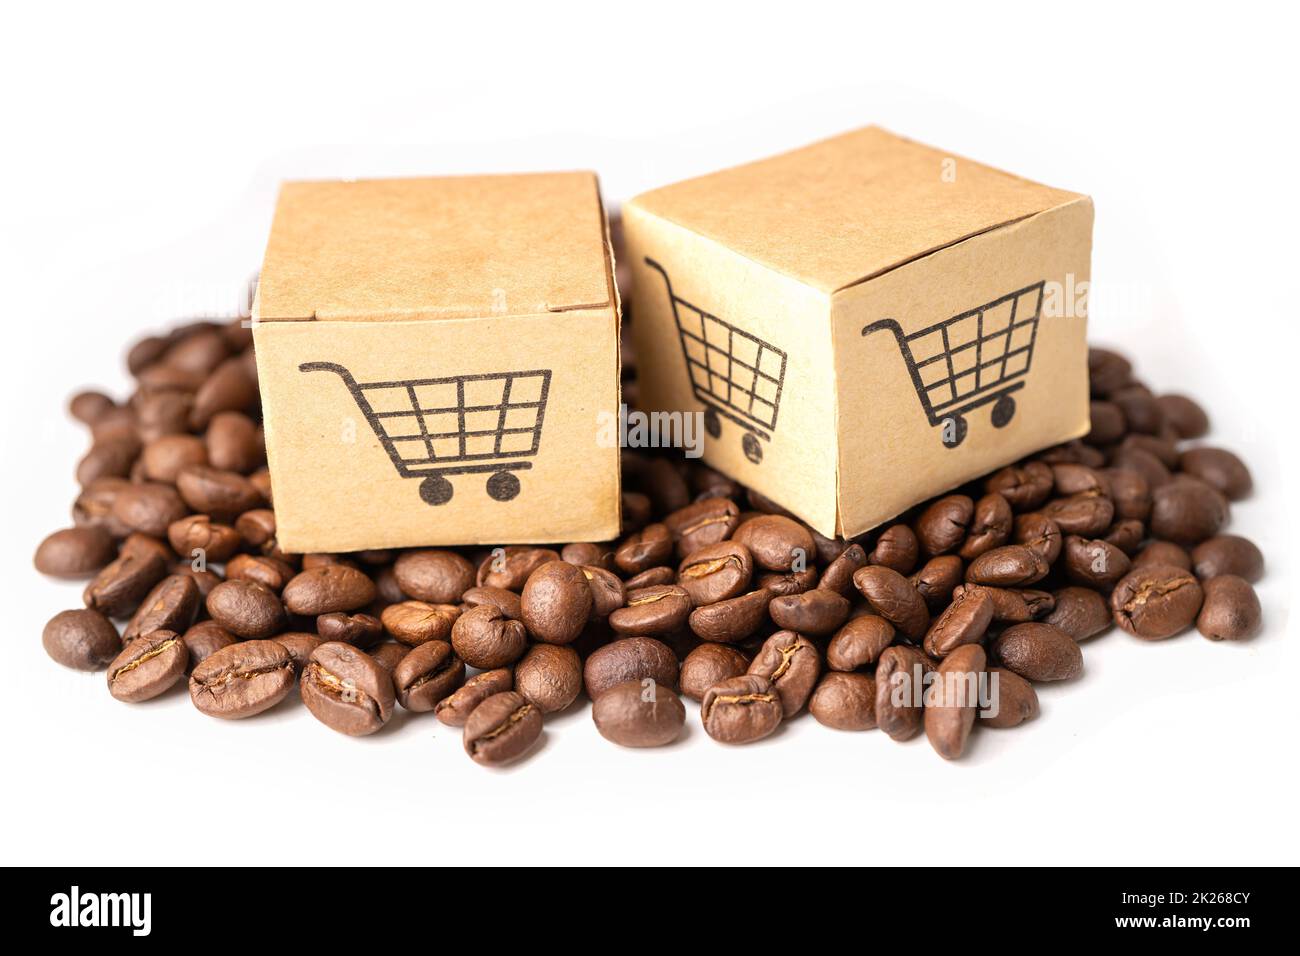 Kaffee import Ausgeschnittene Stockfotos und -bilder - Alamy